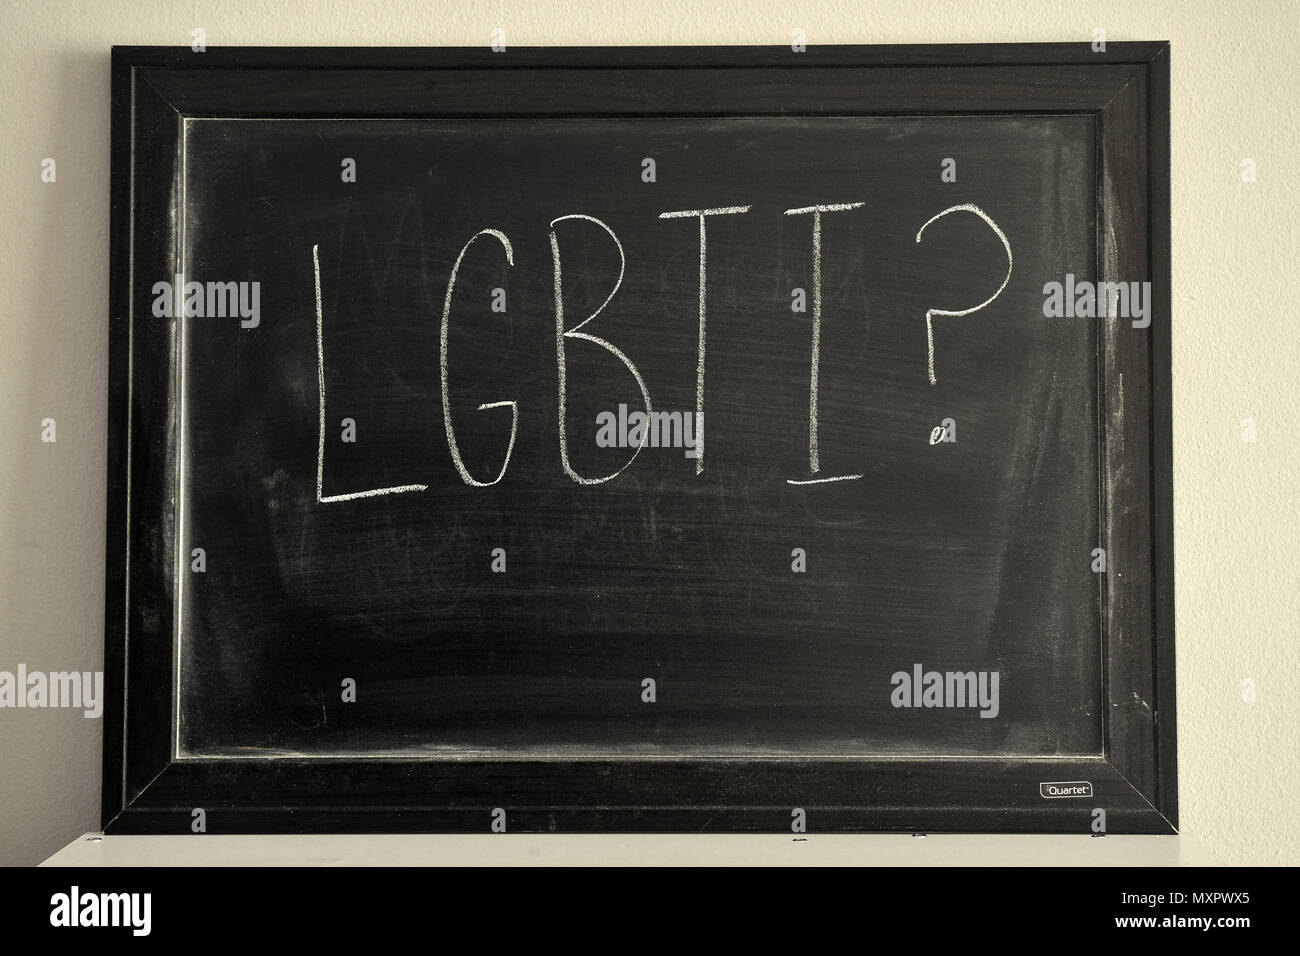 LGBTI escritas en blanco tiza en una pizarra. Foto de stock